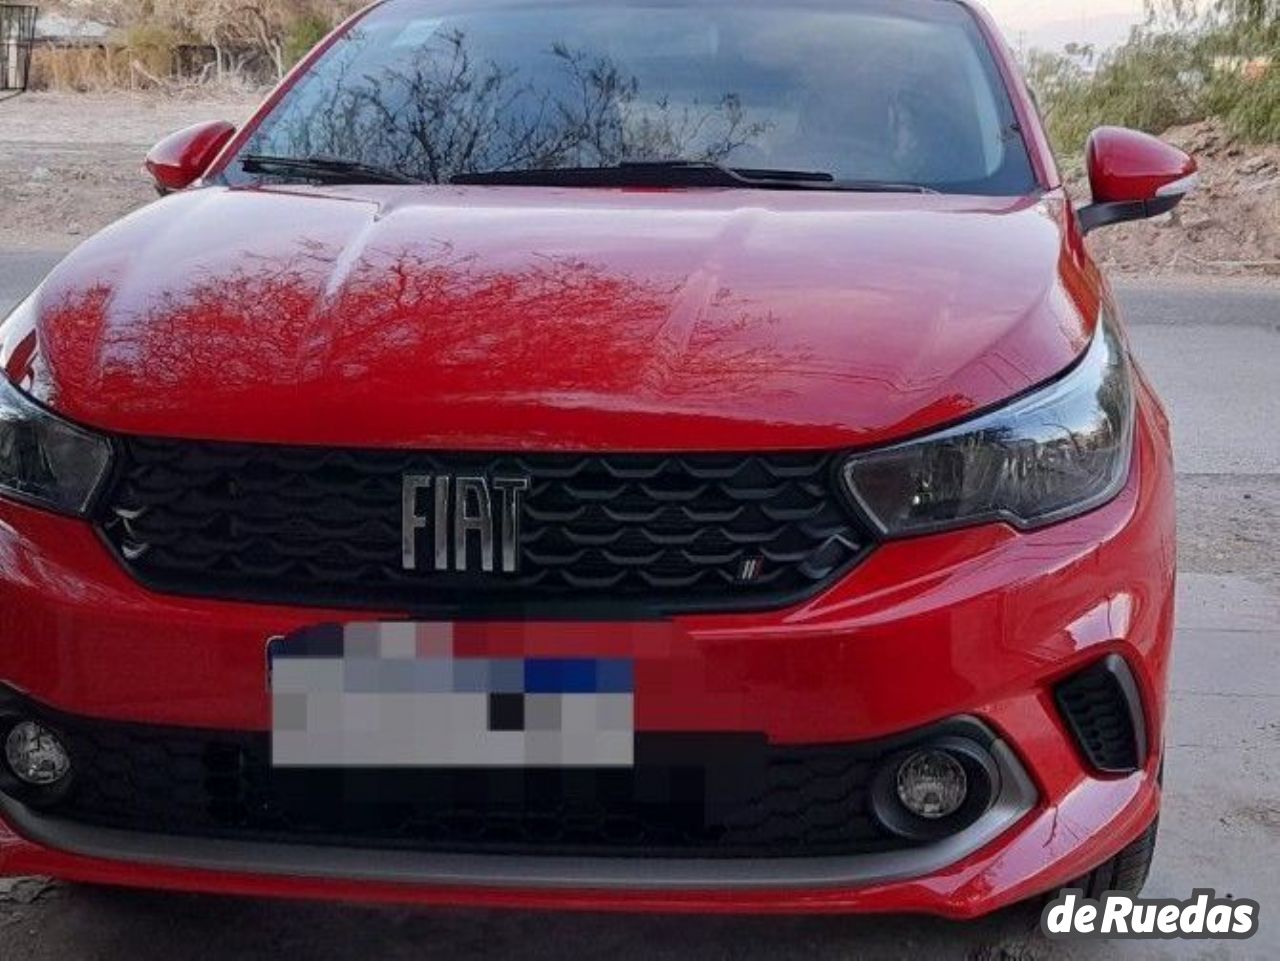 Fiat Argo Nuevo en San Juan, deRuedas